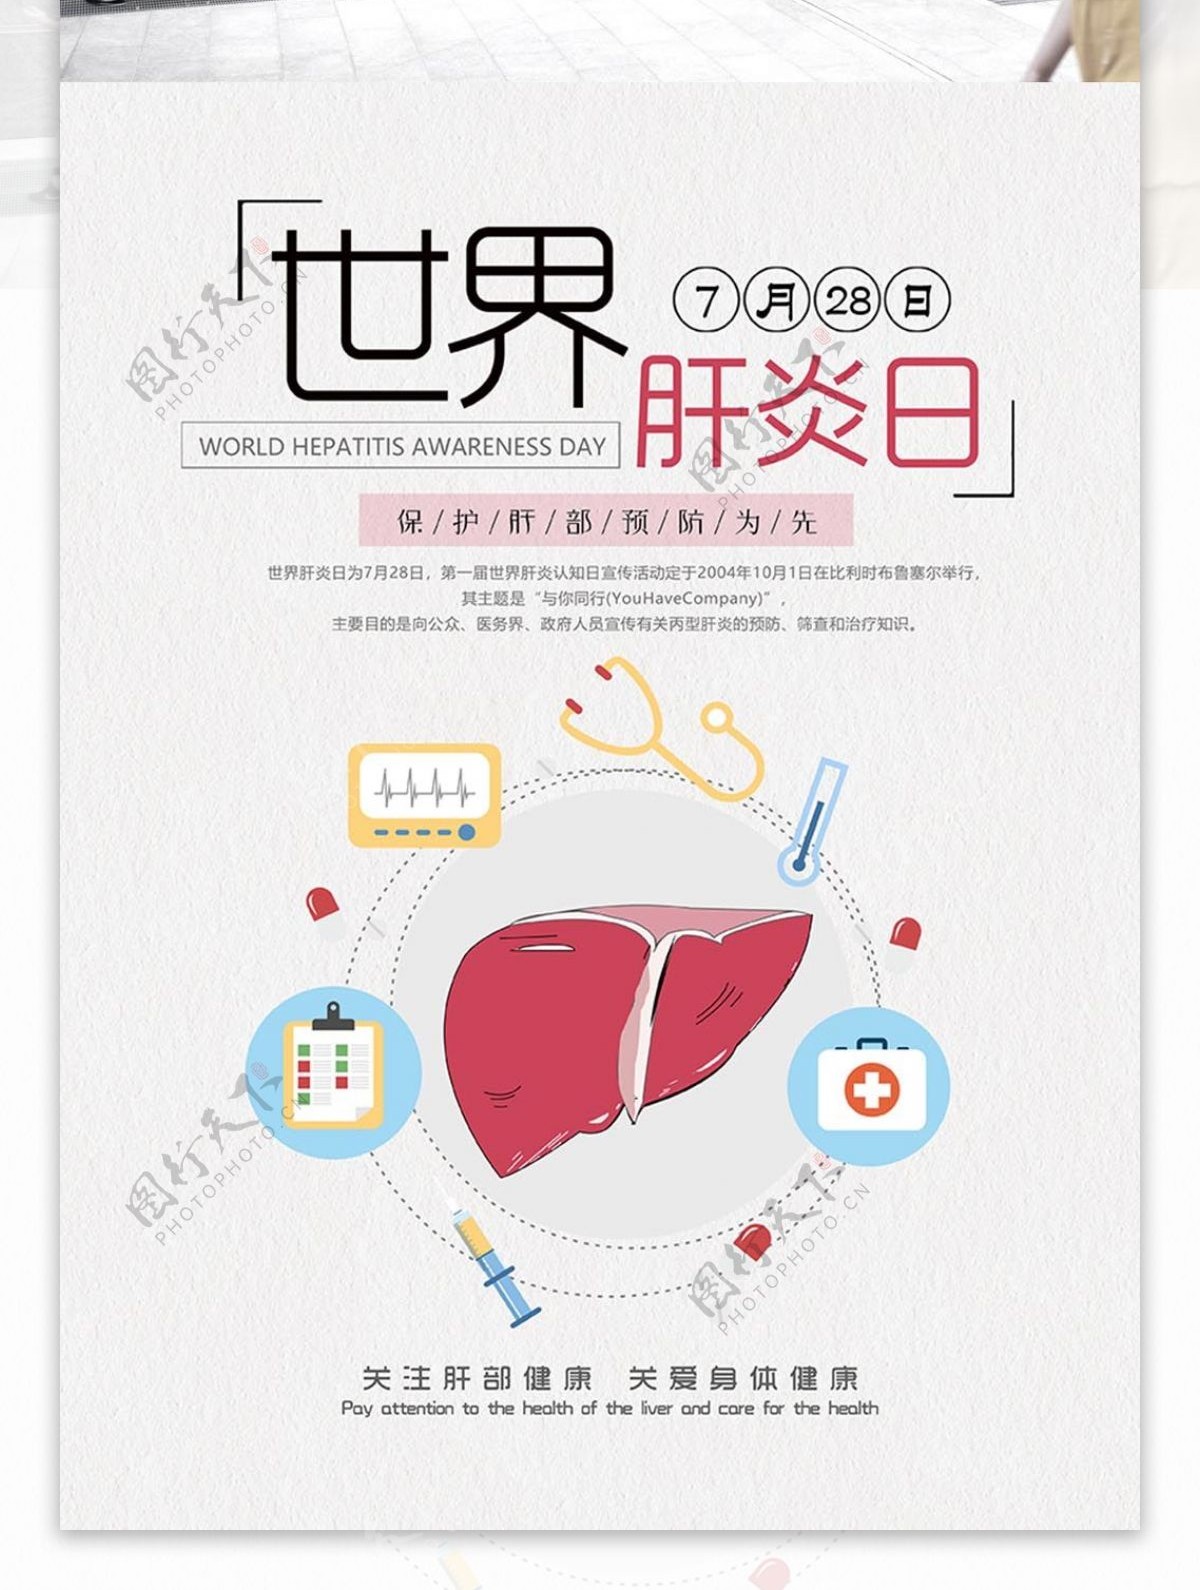 世界肝炎日公益宣传海报设计